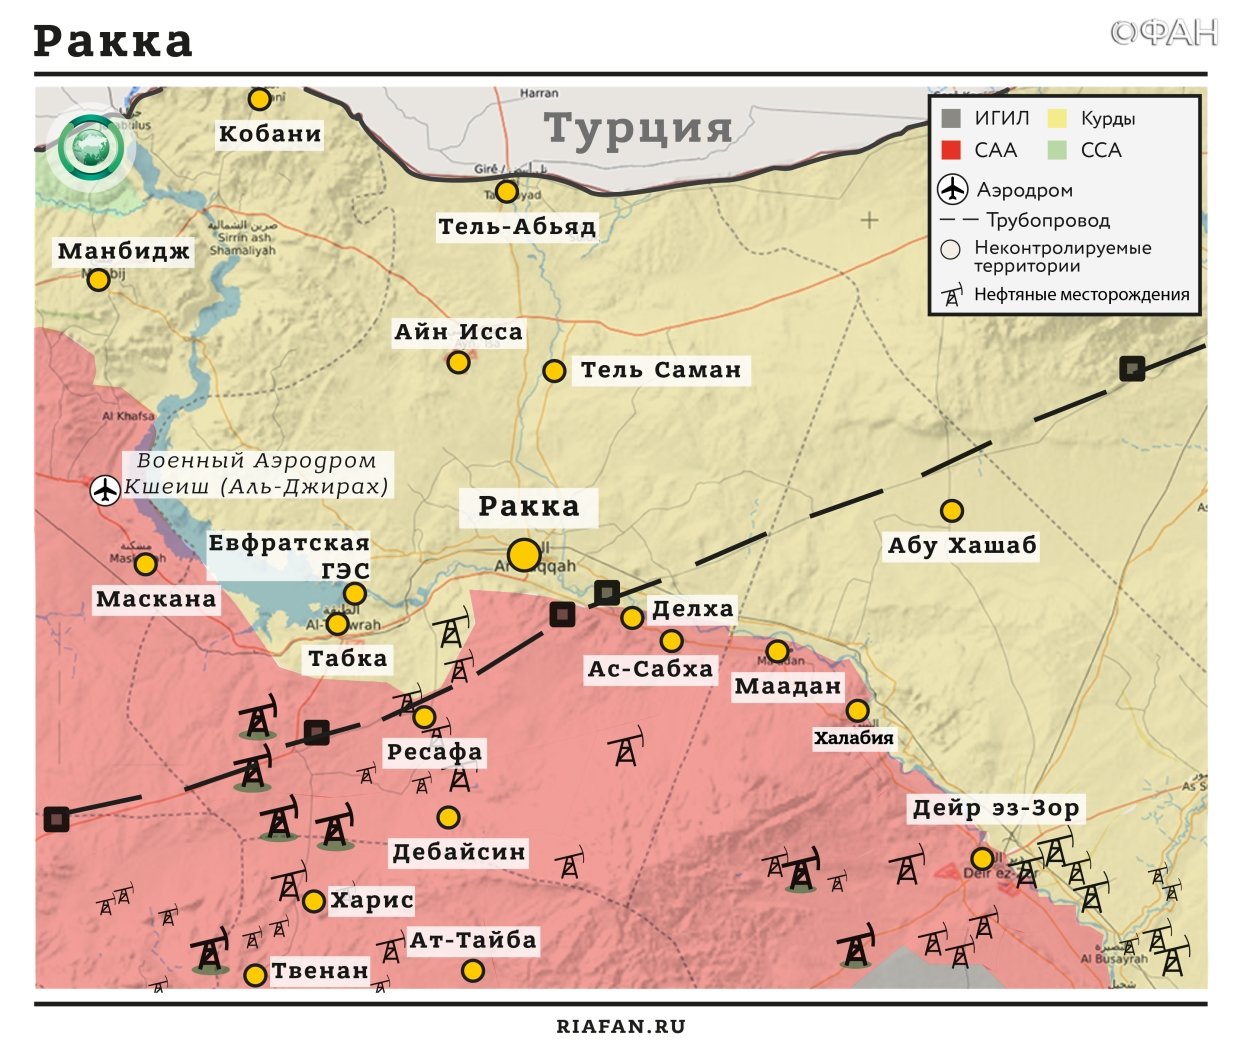 Сирия новости 18 октября 22.30: под огнем ВВС коалиции пострадали мирные жители Дейр-эз-Зора, в Хаме продолжаются бои между САА и радикалами